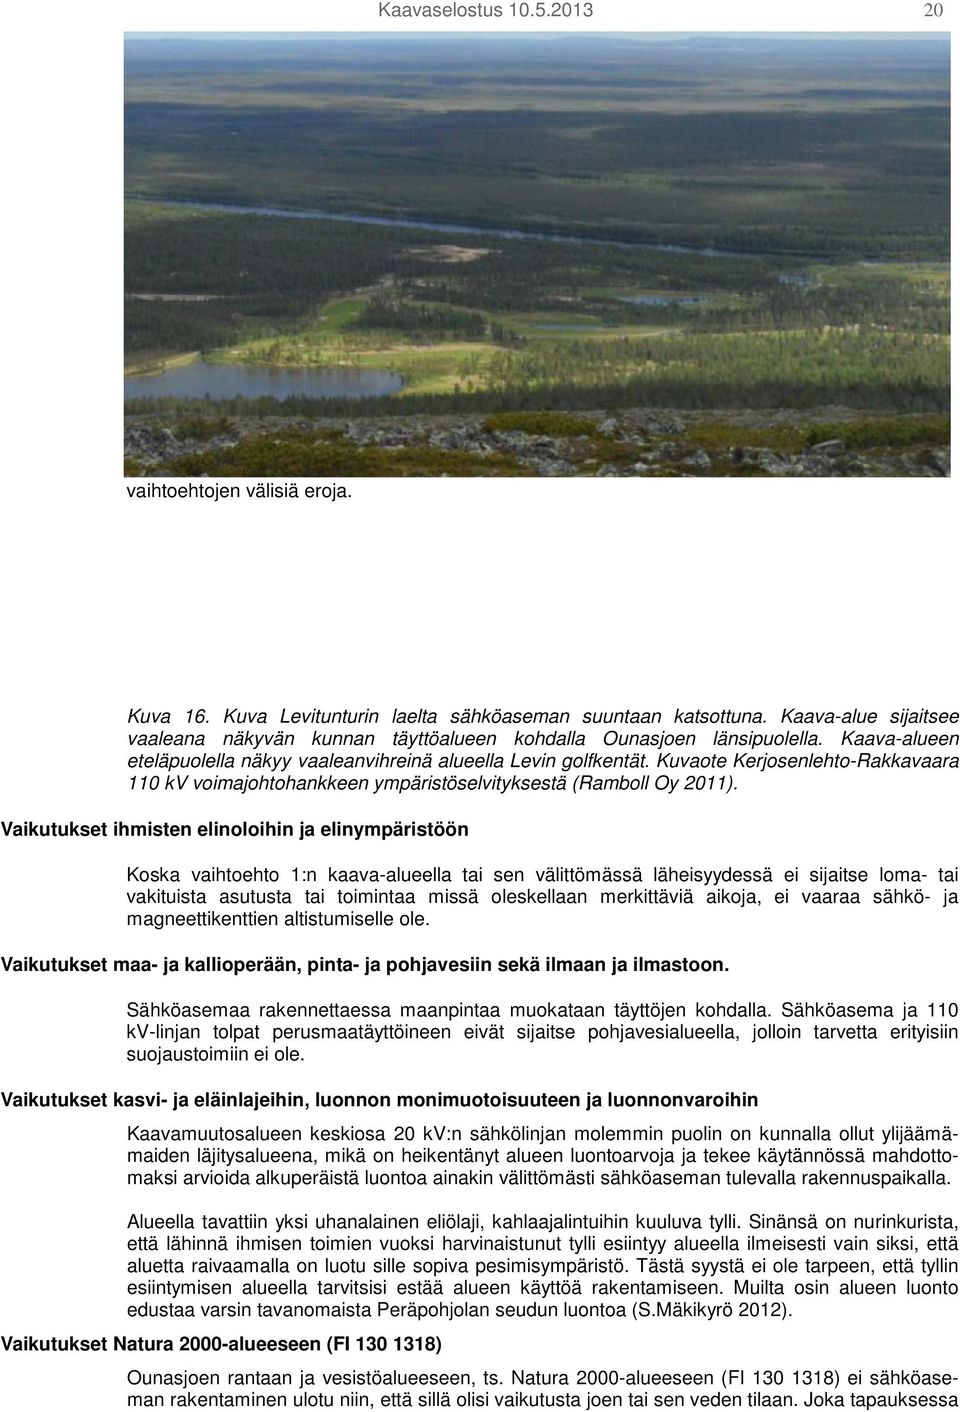 Kuvaote Kerjosenlehto-Rakkavaara 110 kv voimajohtohankkeen ympäristöselvityksestä (Ramboll Oy 2011).